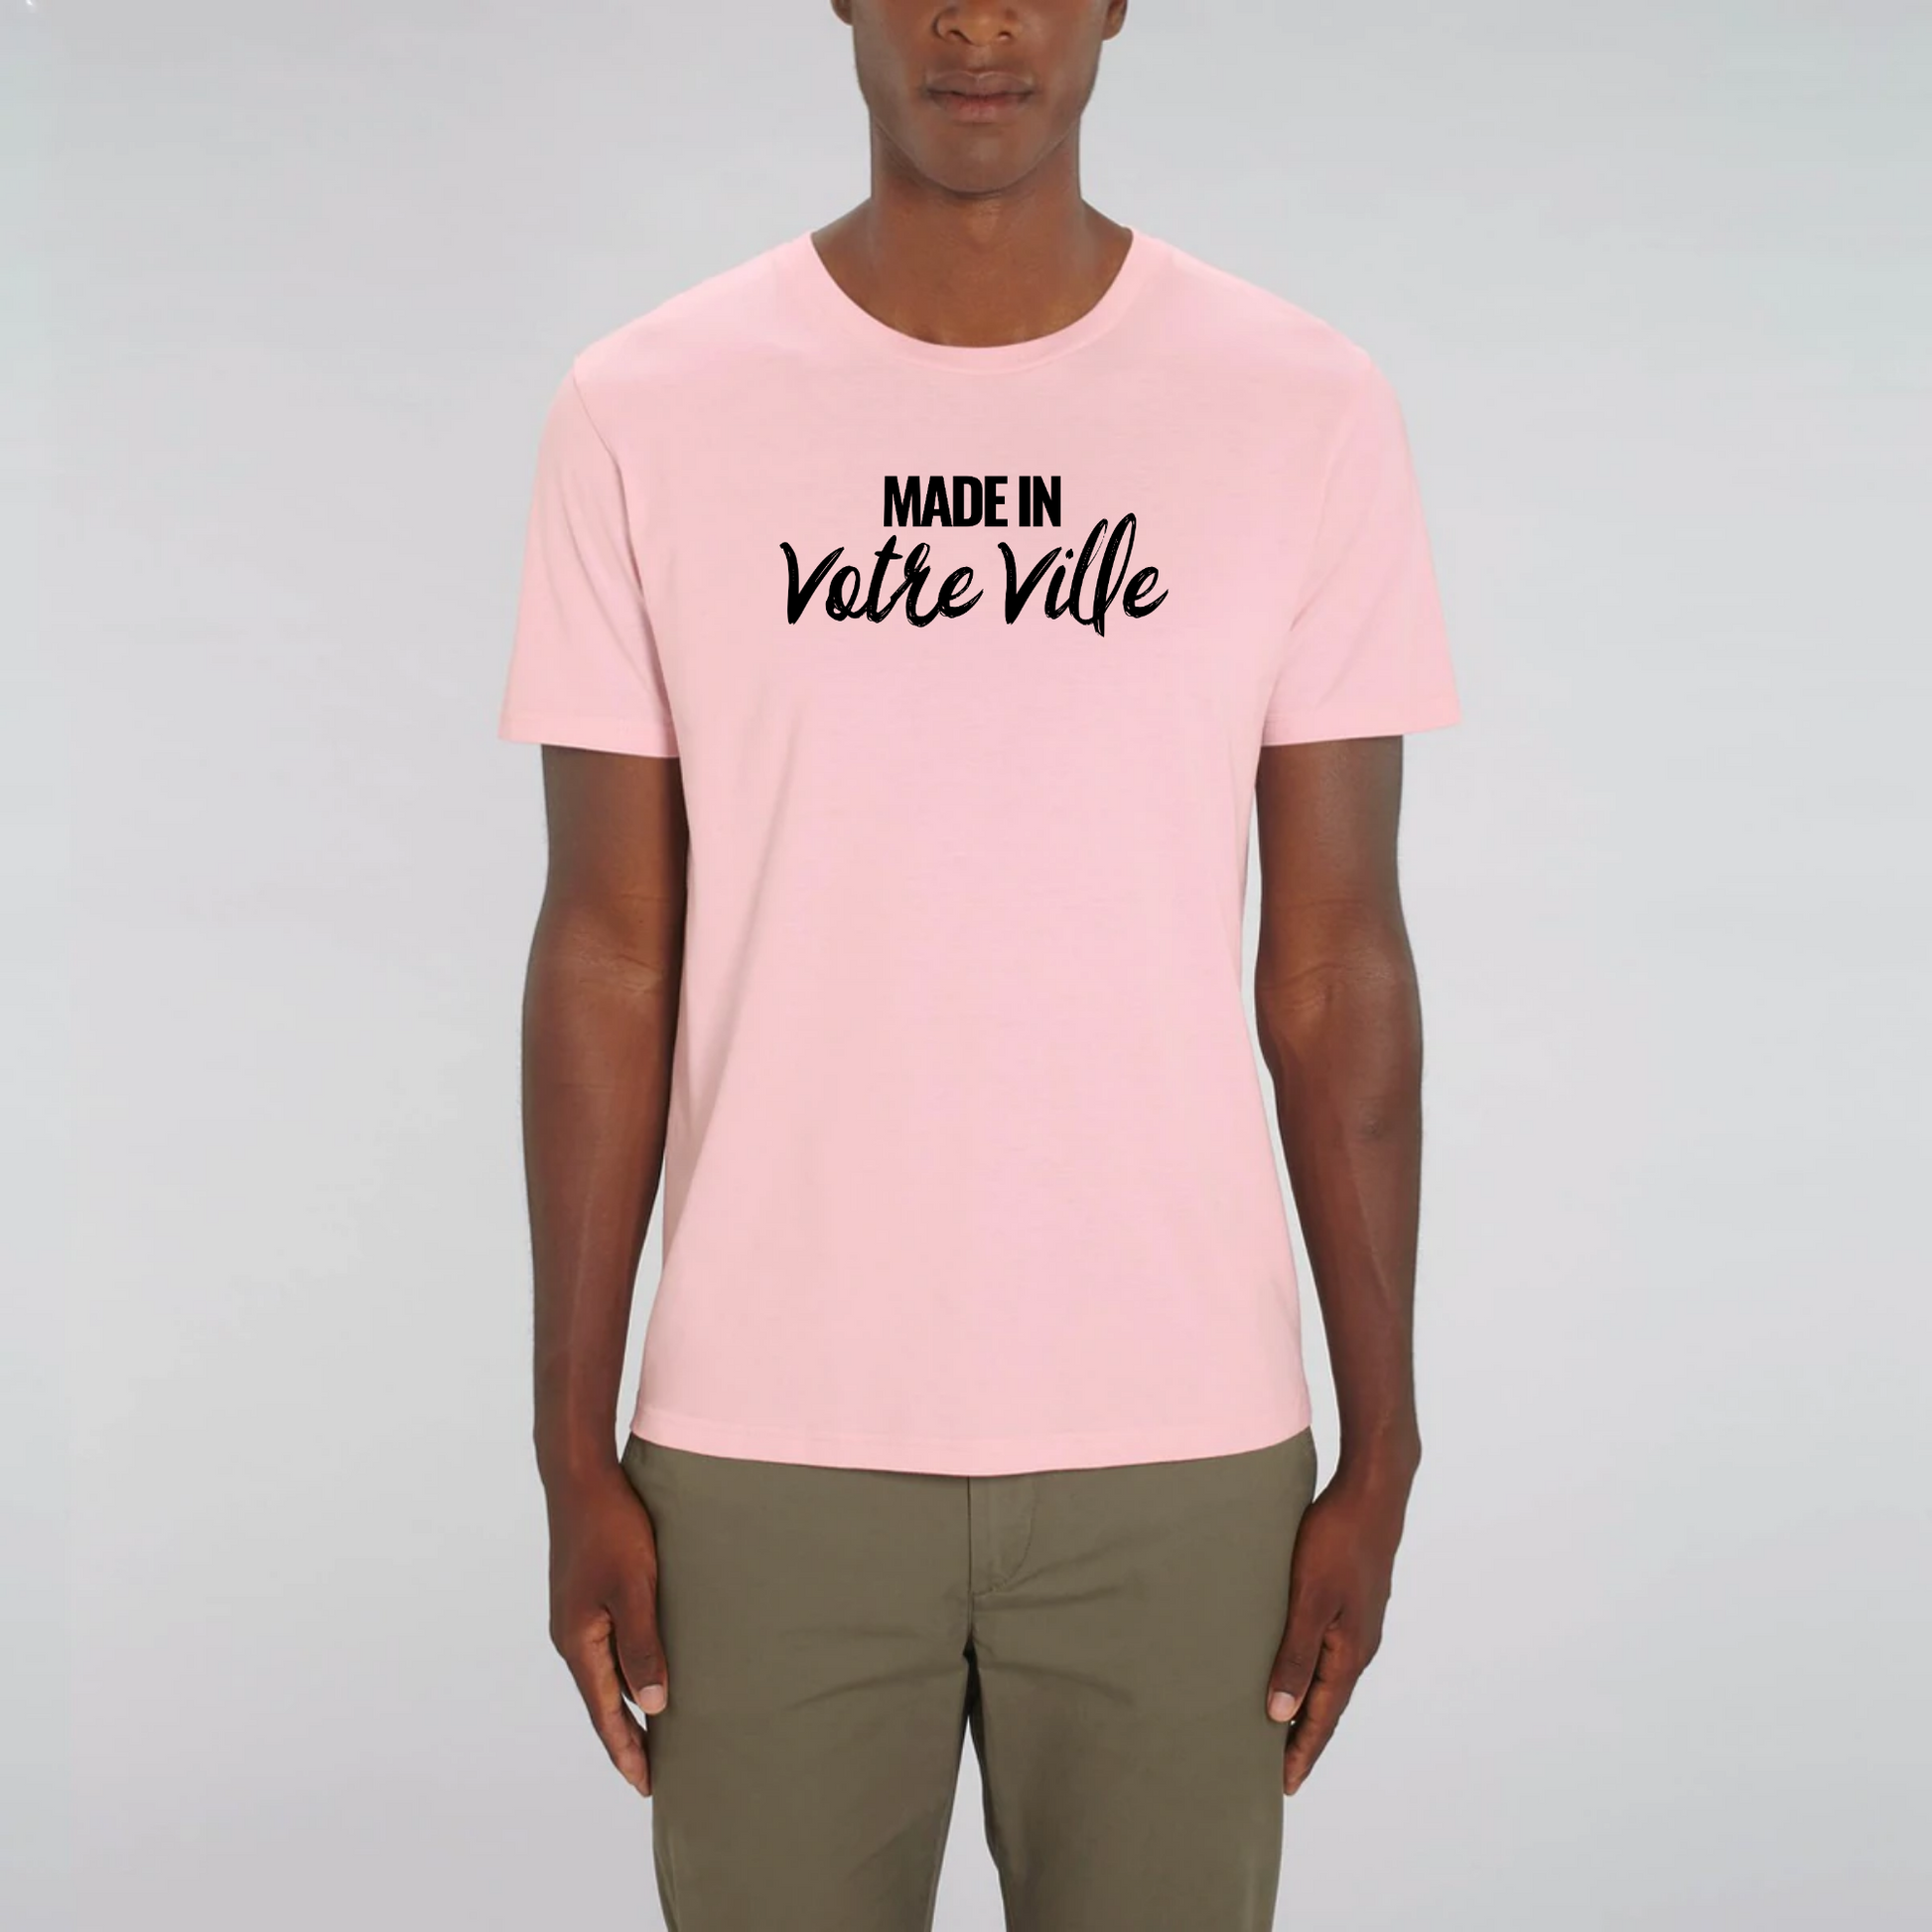 t-shirt personnalisé made in votre ville en coton bio blanc de T-French, t-shirt personnalisable avec votre ville, t-shirt nom de ville, t-shirt made in, t-shirt personnalisable en coton bio, t-shirt T-French, t-shirt Rose